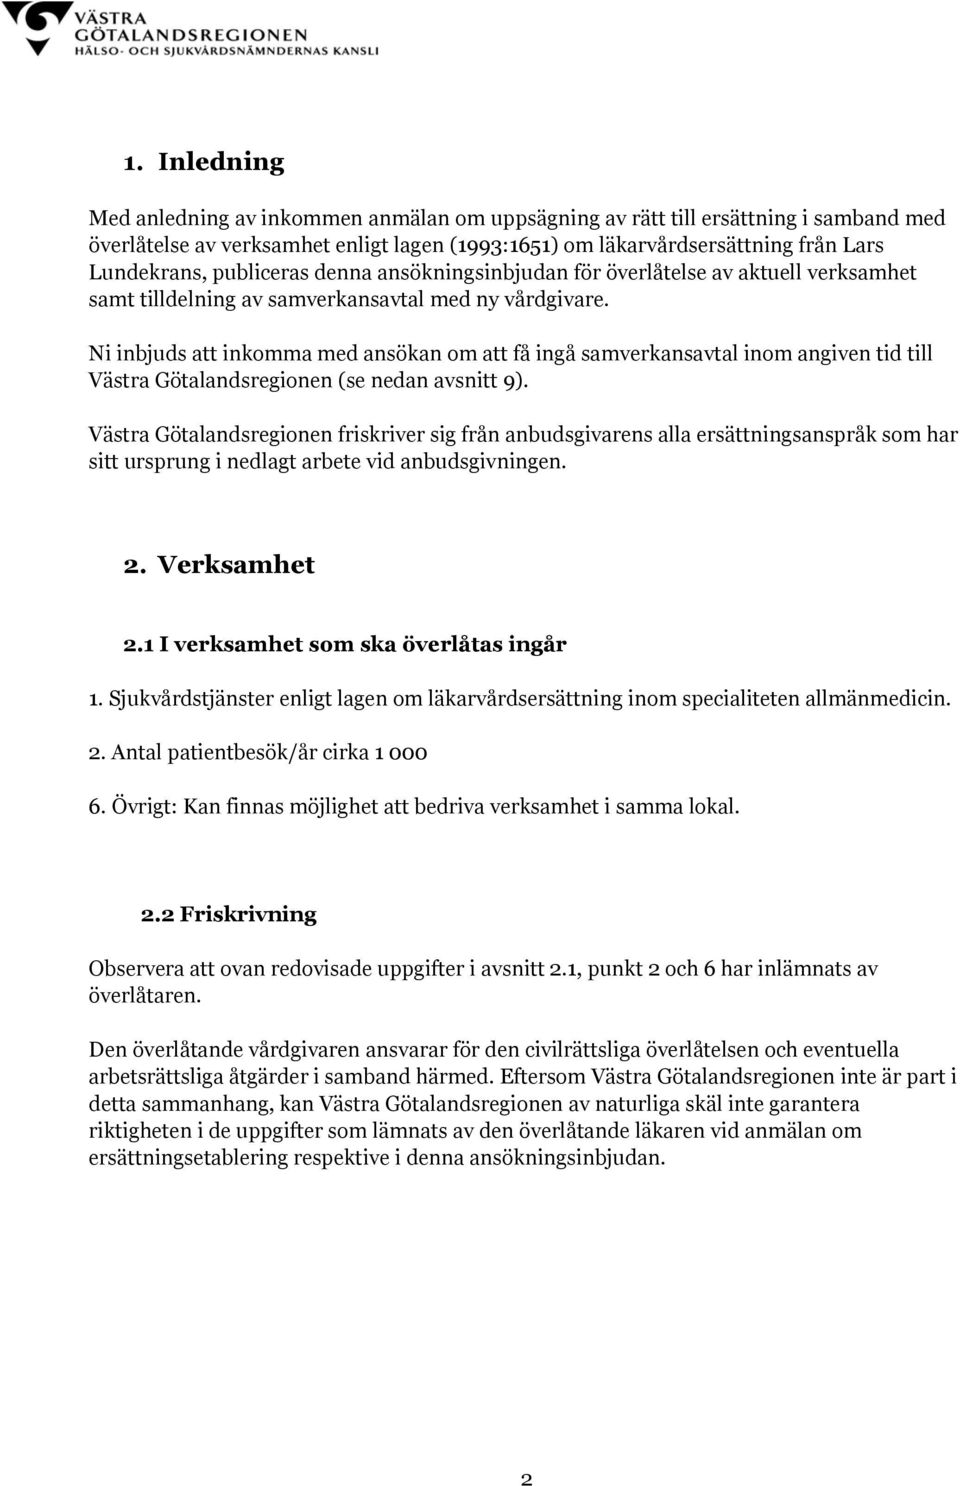 Ni inbjuds att inkomma med ansökan om att få ingå samverkansavtal inom angiven tid till Västra Götalandsregionen (se nedan avsnitt 9).